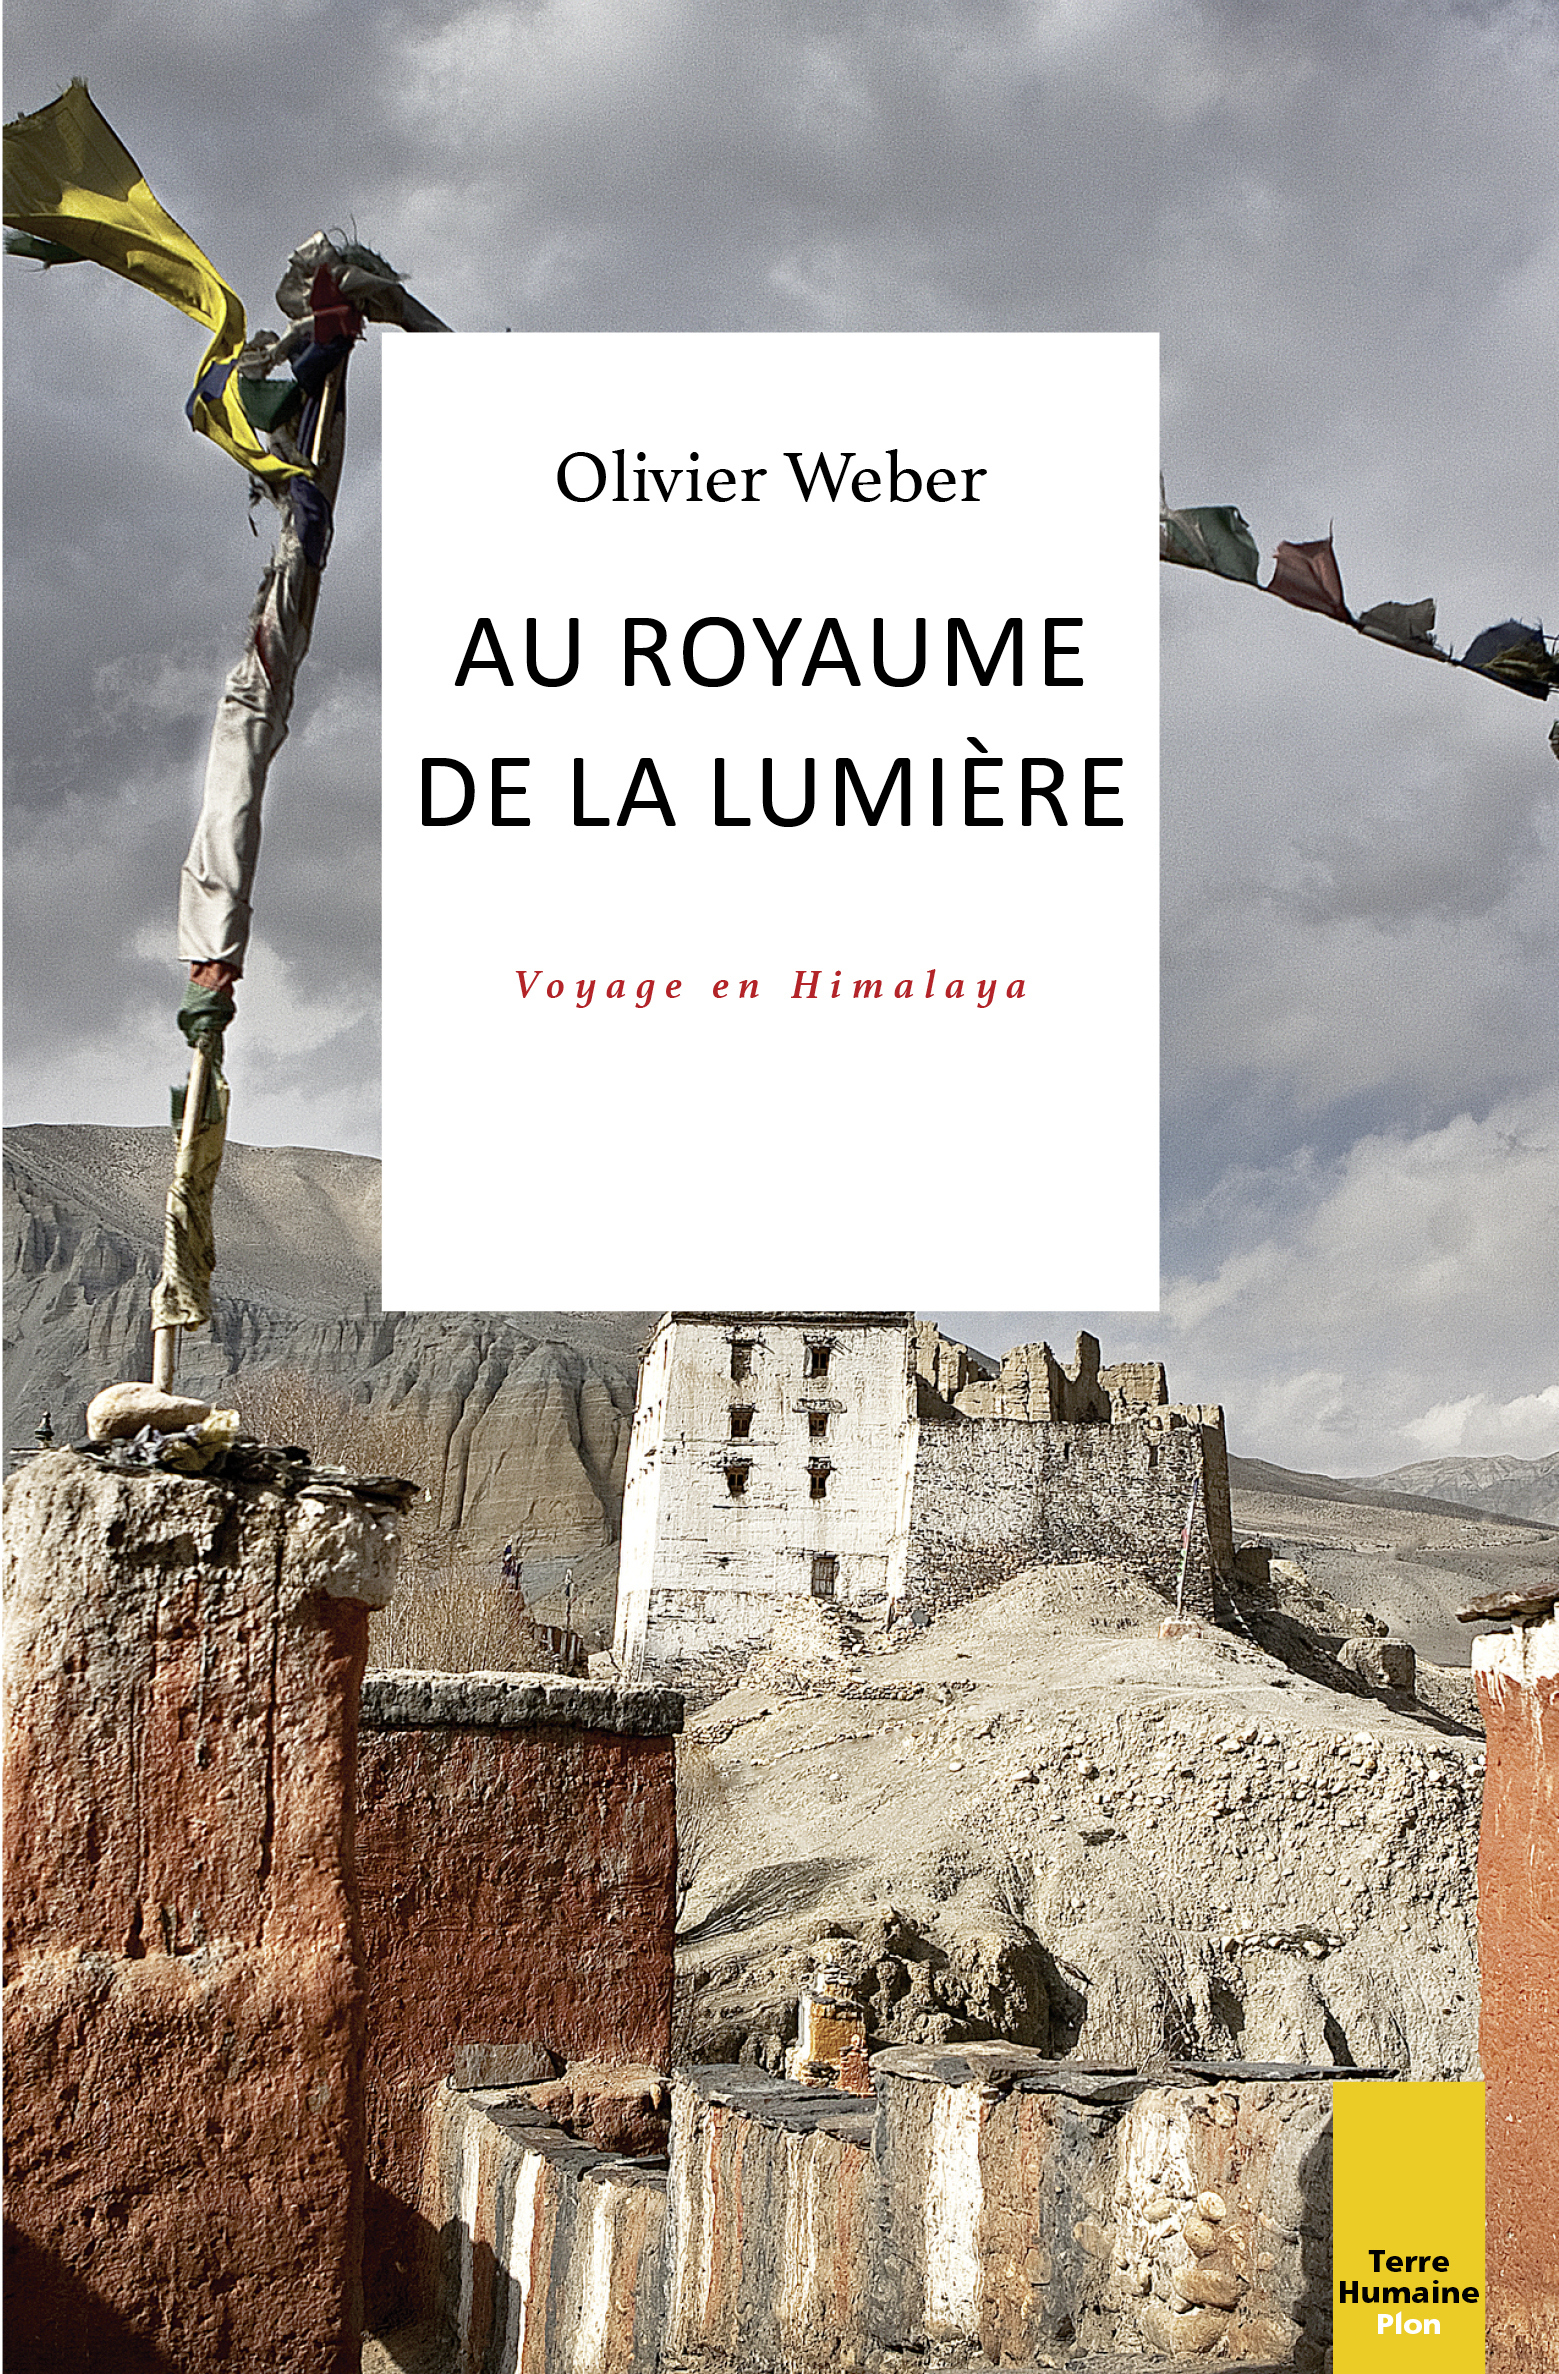 Au royaume de la lumière, un voyage en Himalaya d’Olivier Weber paraît chez Plon.